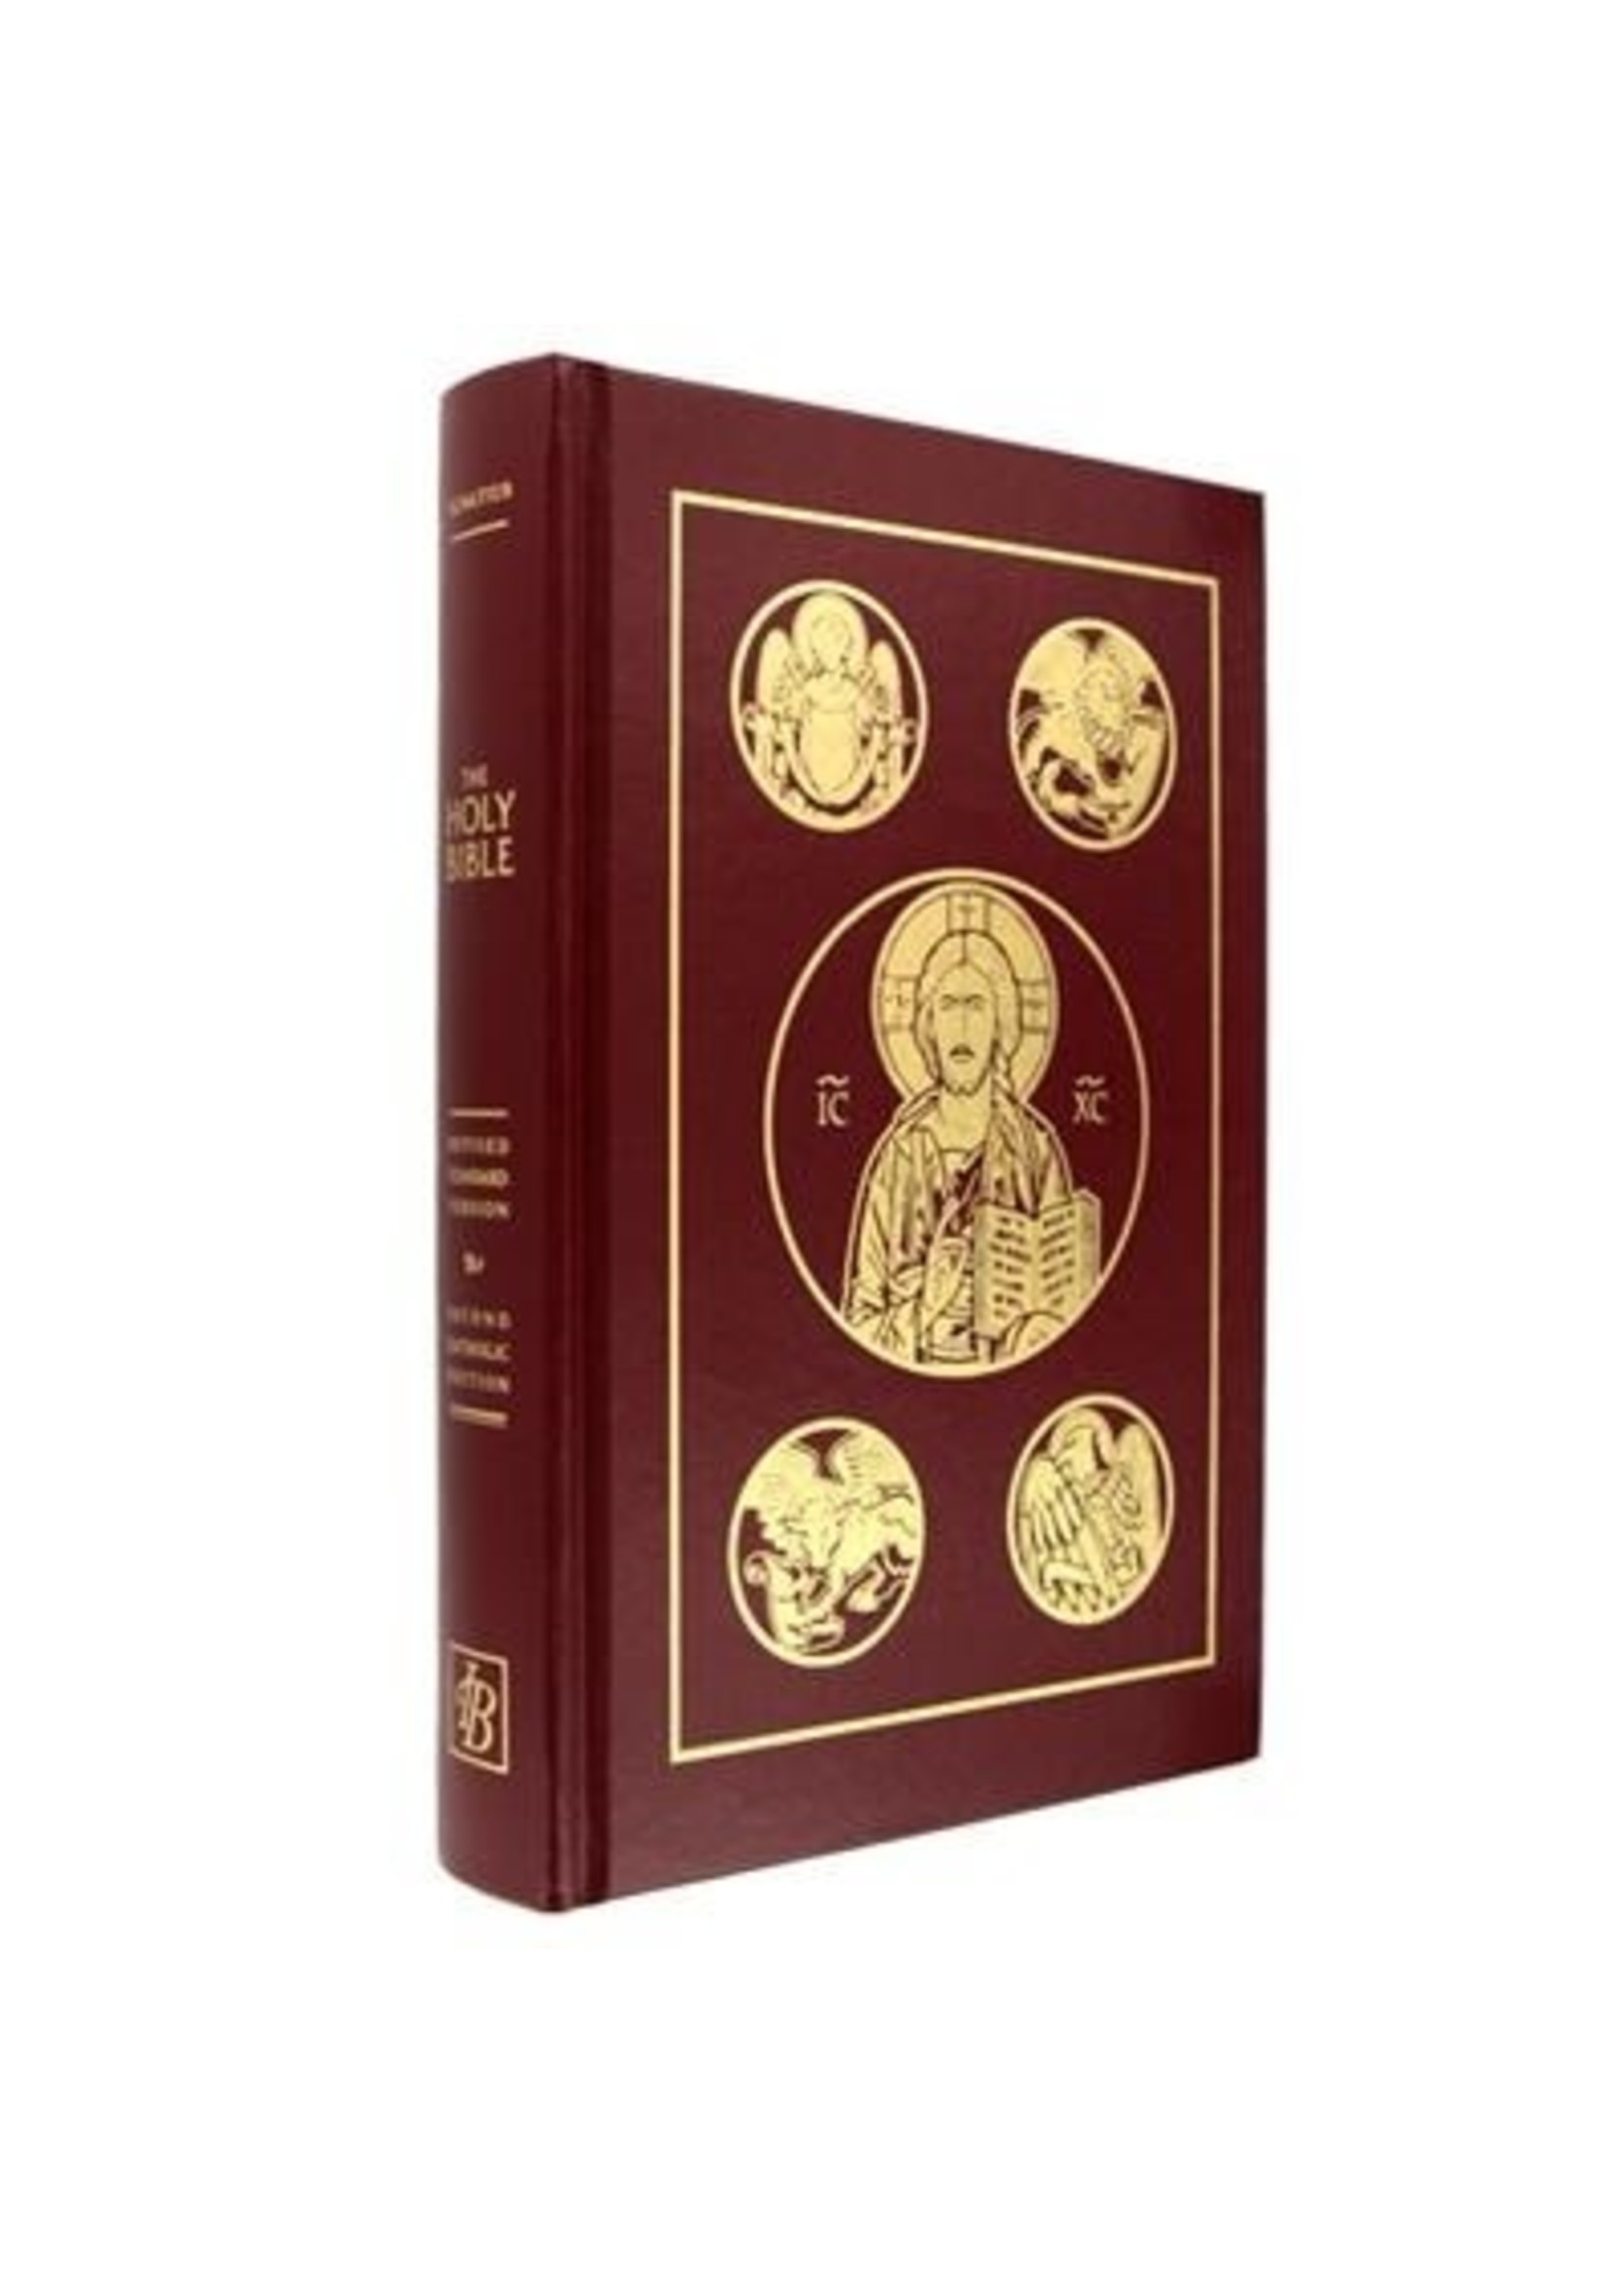 Ignatius Holy Bible, RSV Second Catholic Hardcover Edition